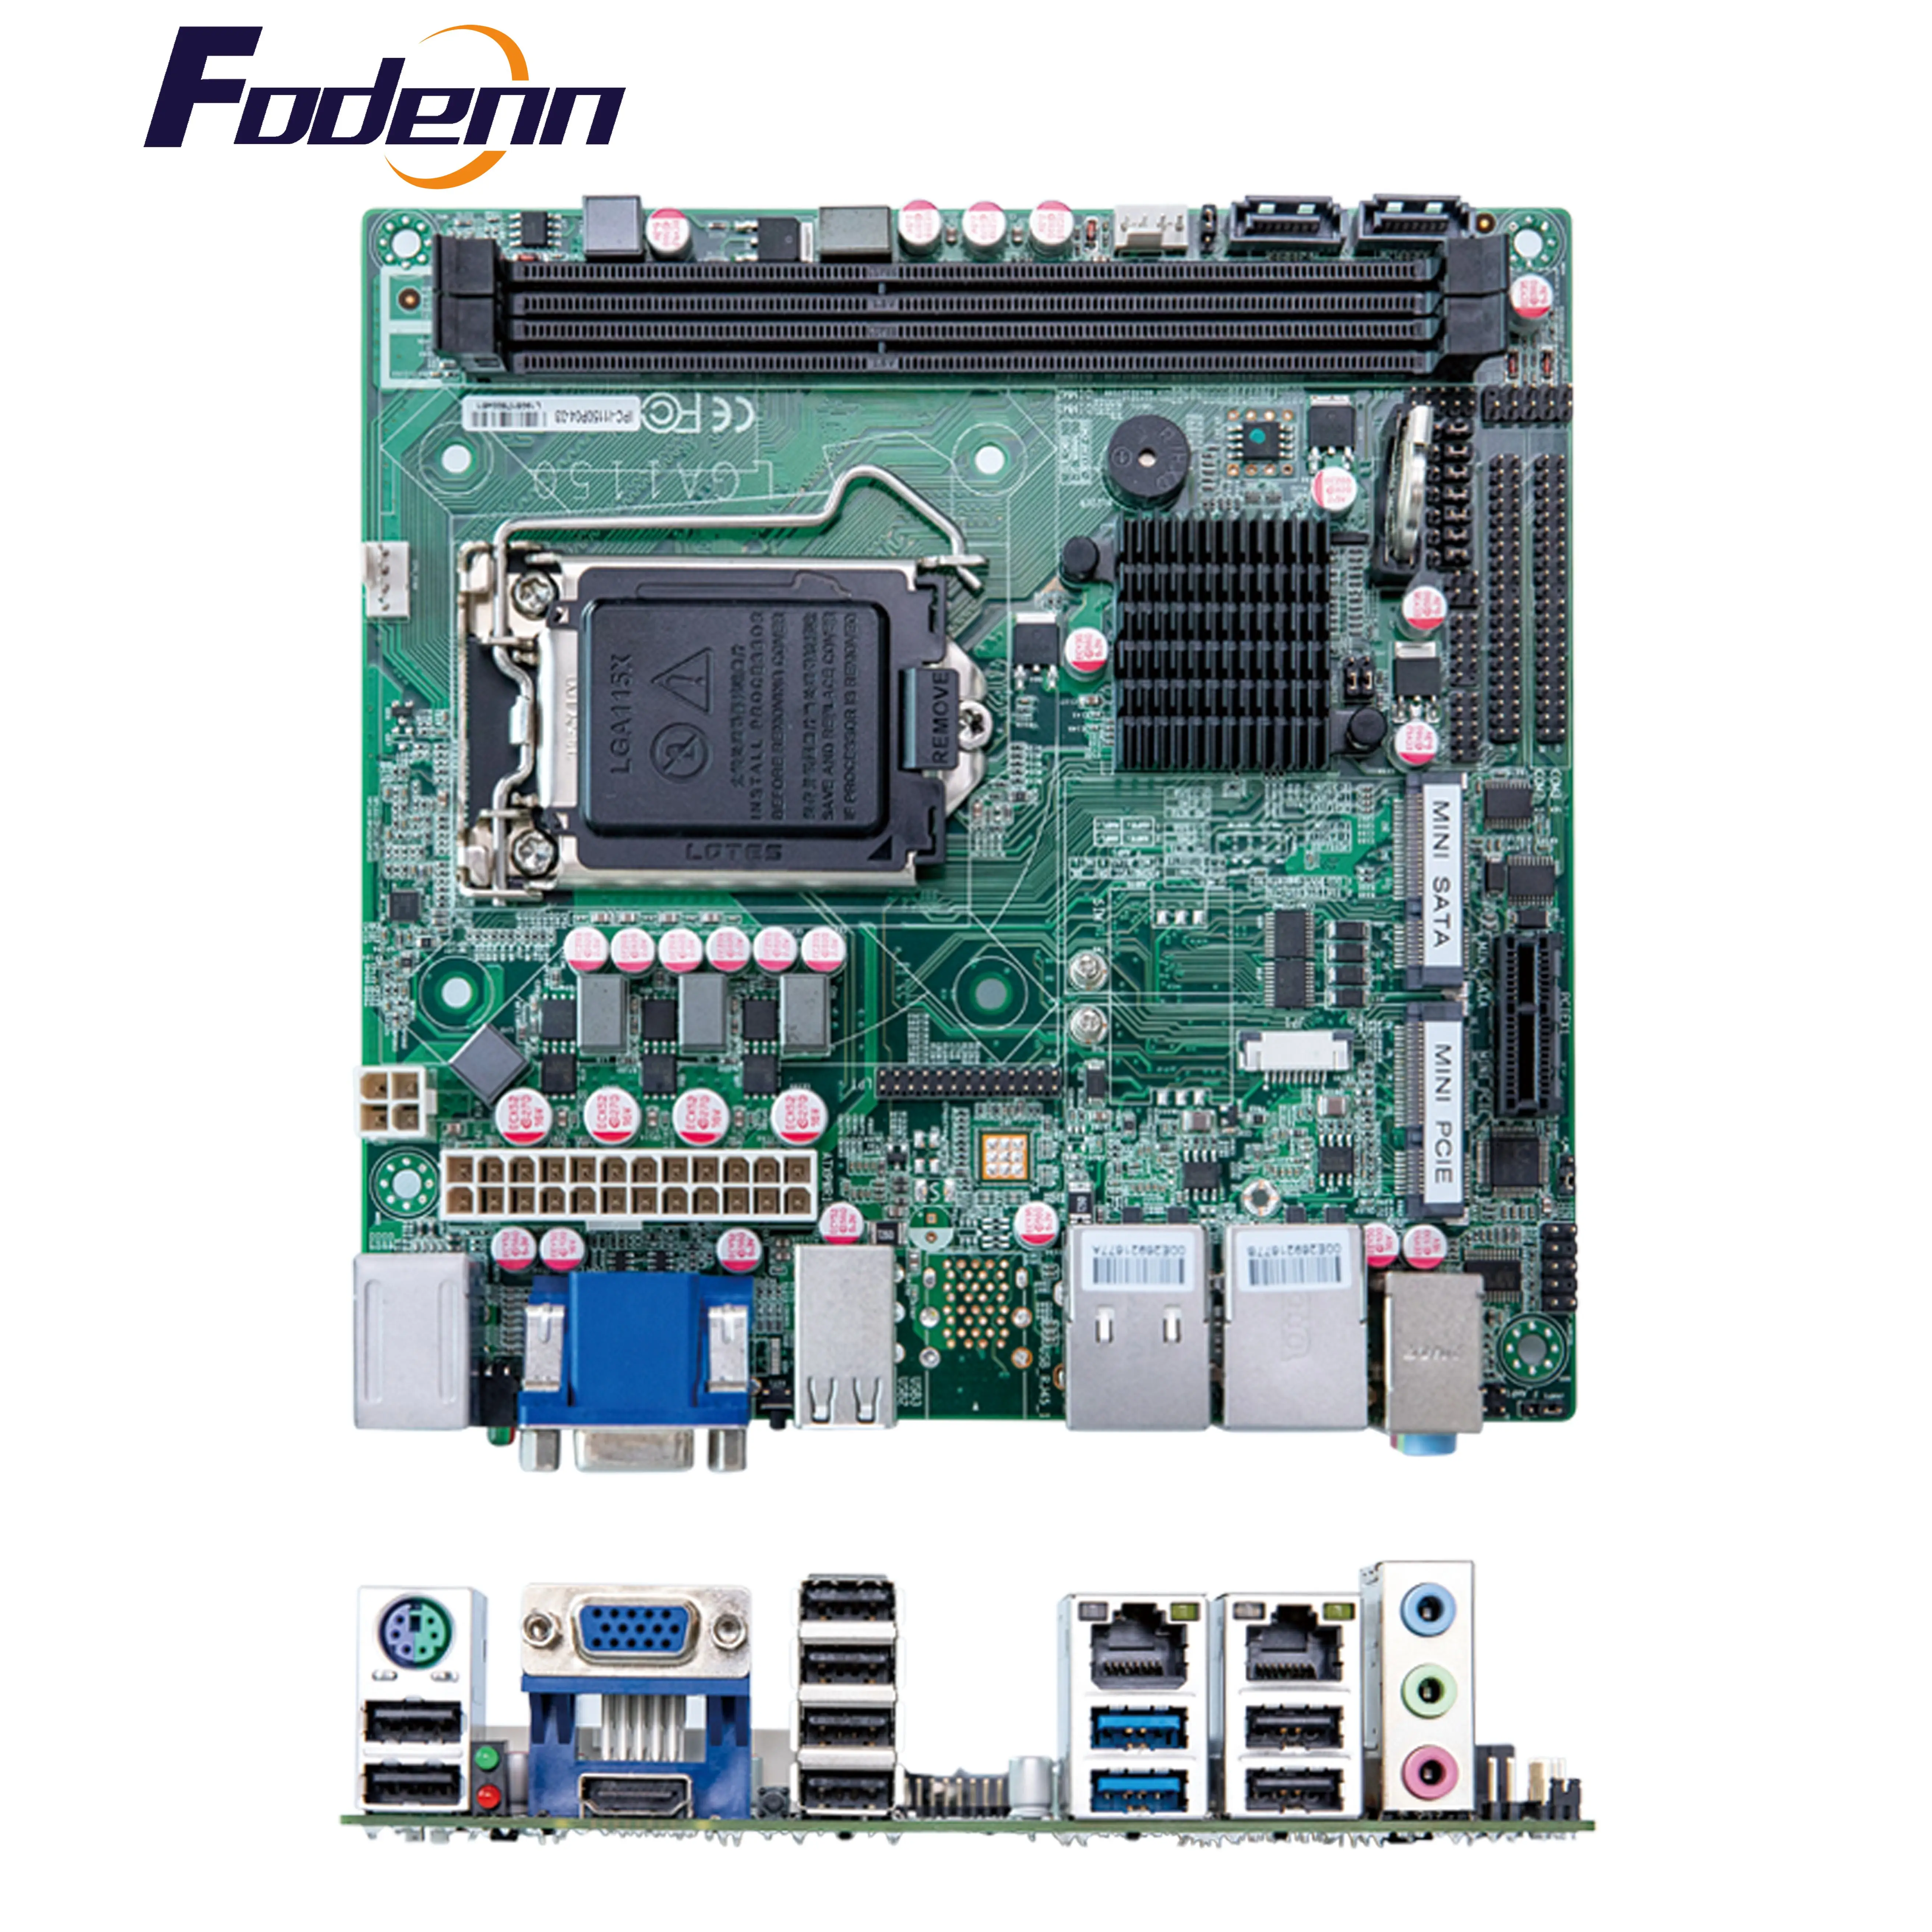 

Fodenn 4G/WIFI USB3.0 RS422/485 H81 DDR3 LGA1150 Intel Haswell I3/I5/I7 Processor Desktop X86 MINI ITX Industrial Motherboard